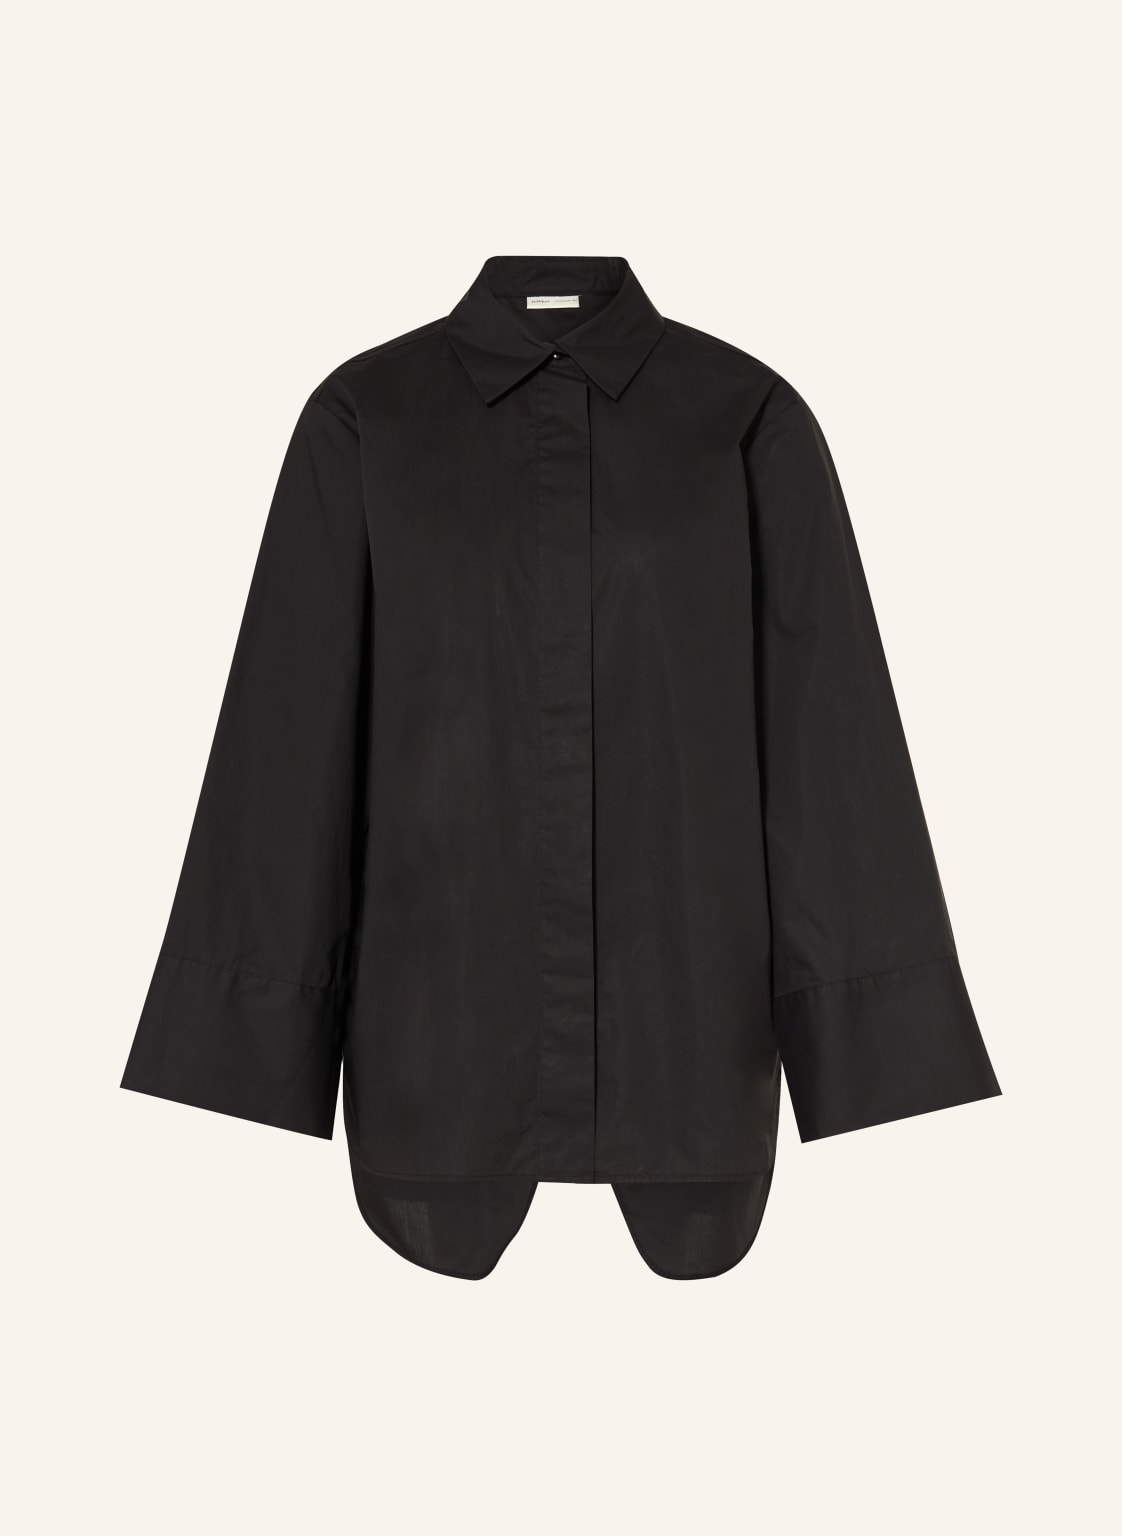 Inwear Hemdbluse Coletteiw Mit 3/4-Arm schwarz von InWear